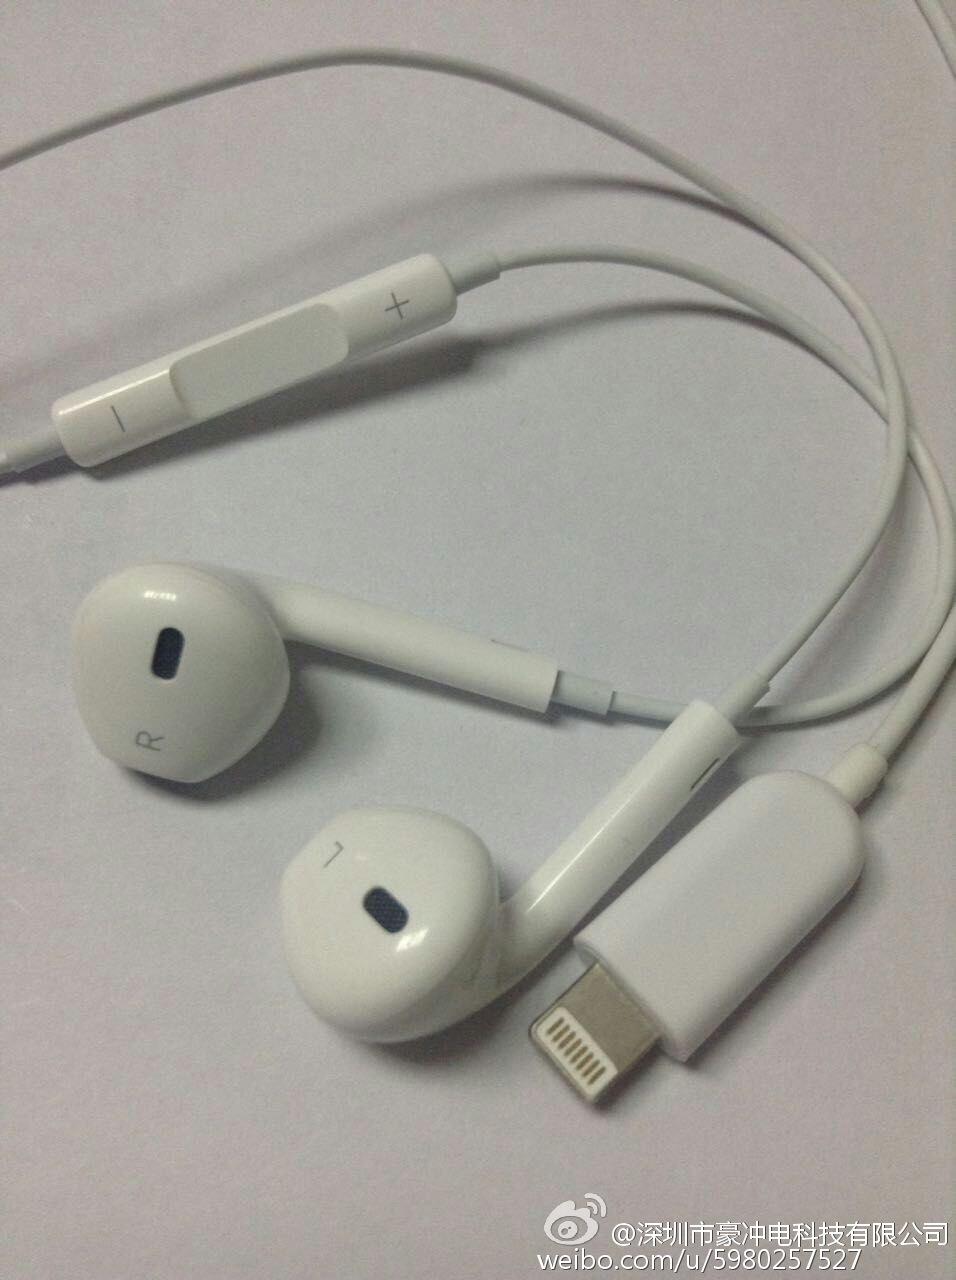 หูฟัง  iPhone 7 กำลังจะเปลี่ยนไป